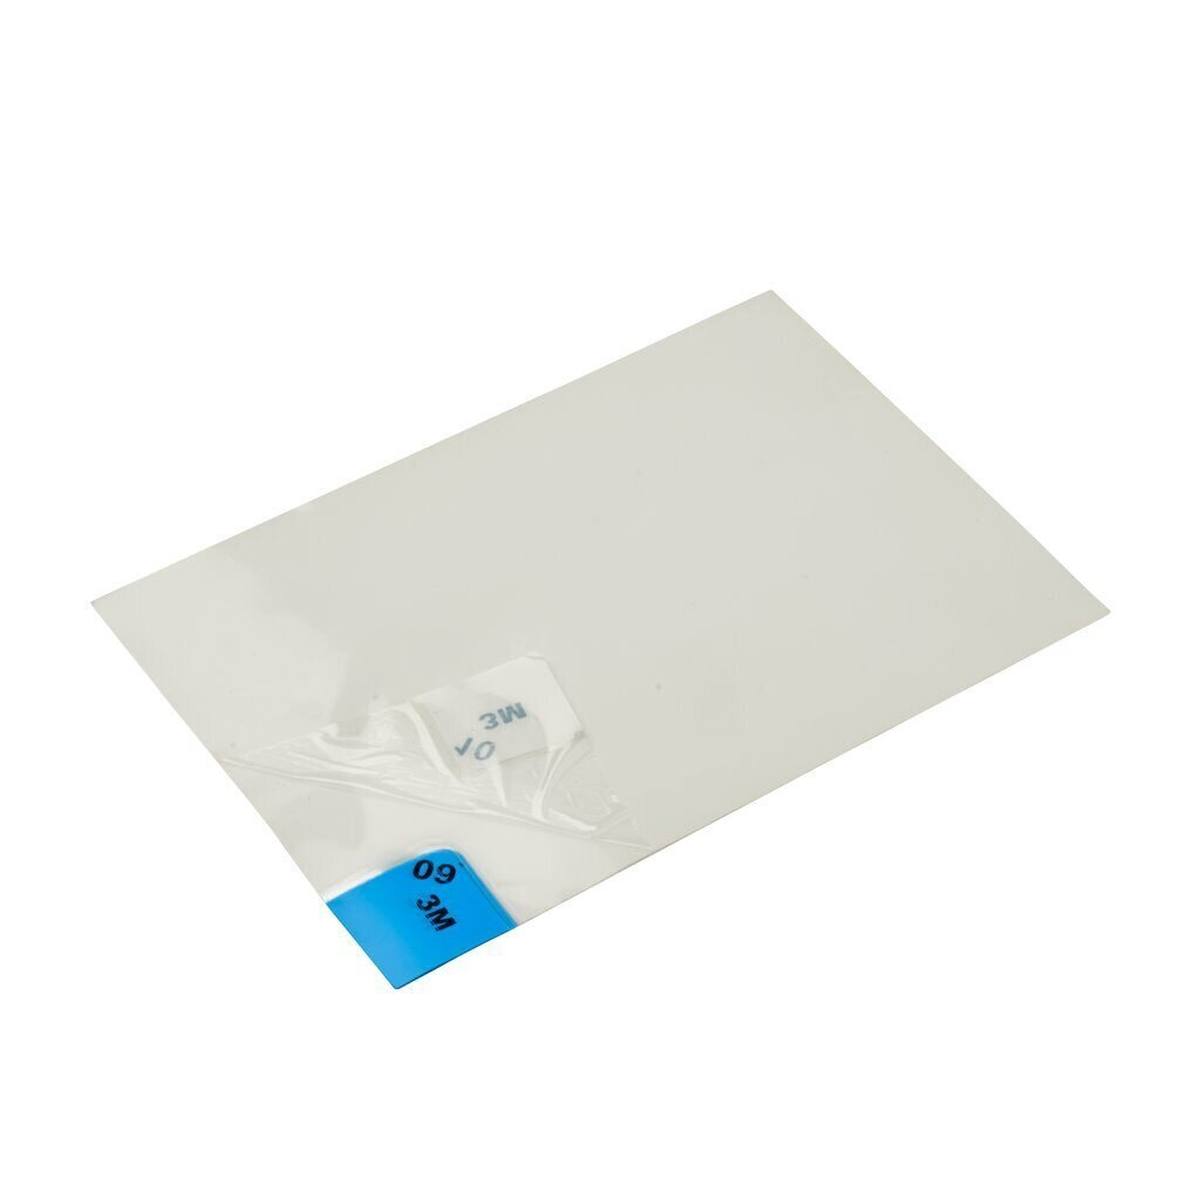 3M 4300 Tapis adhésif pour poussières fines Nomad, blanc, 1,15m x 0,45m, 40pcs couches de polyéthylène transparent